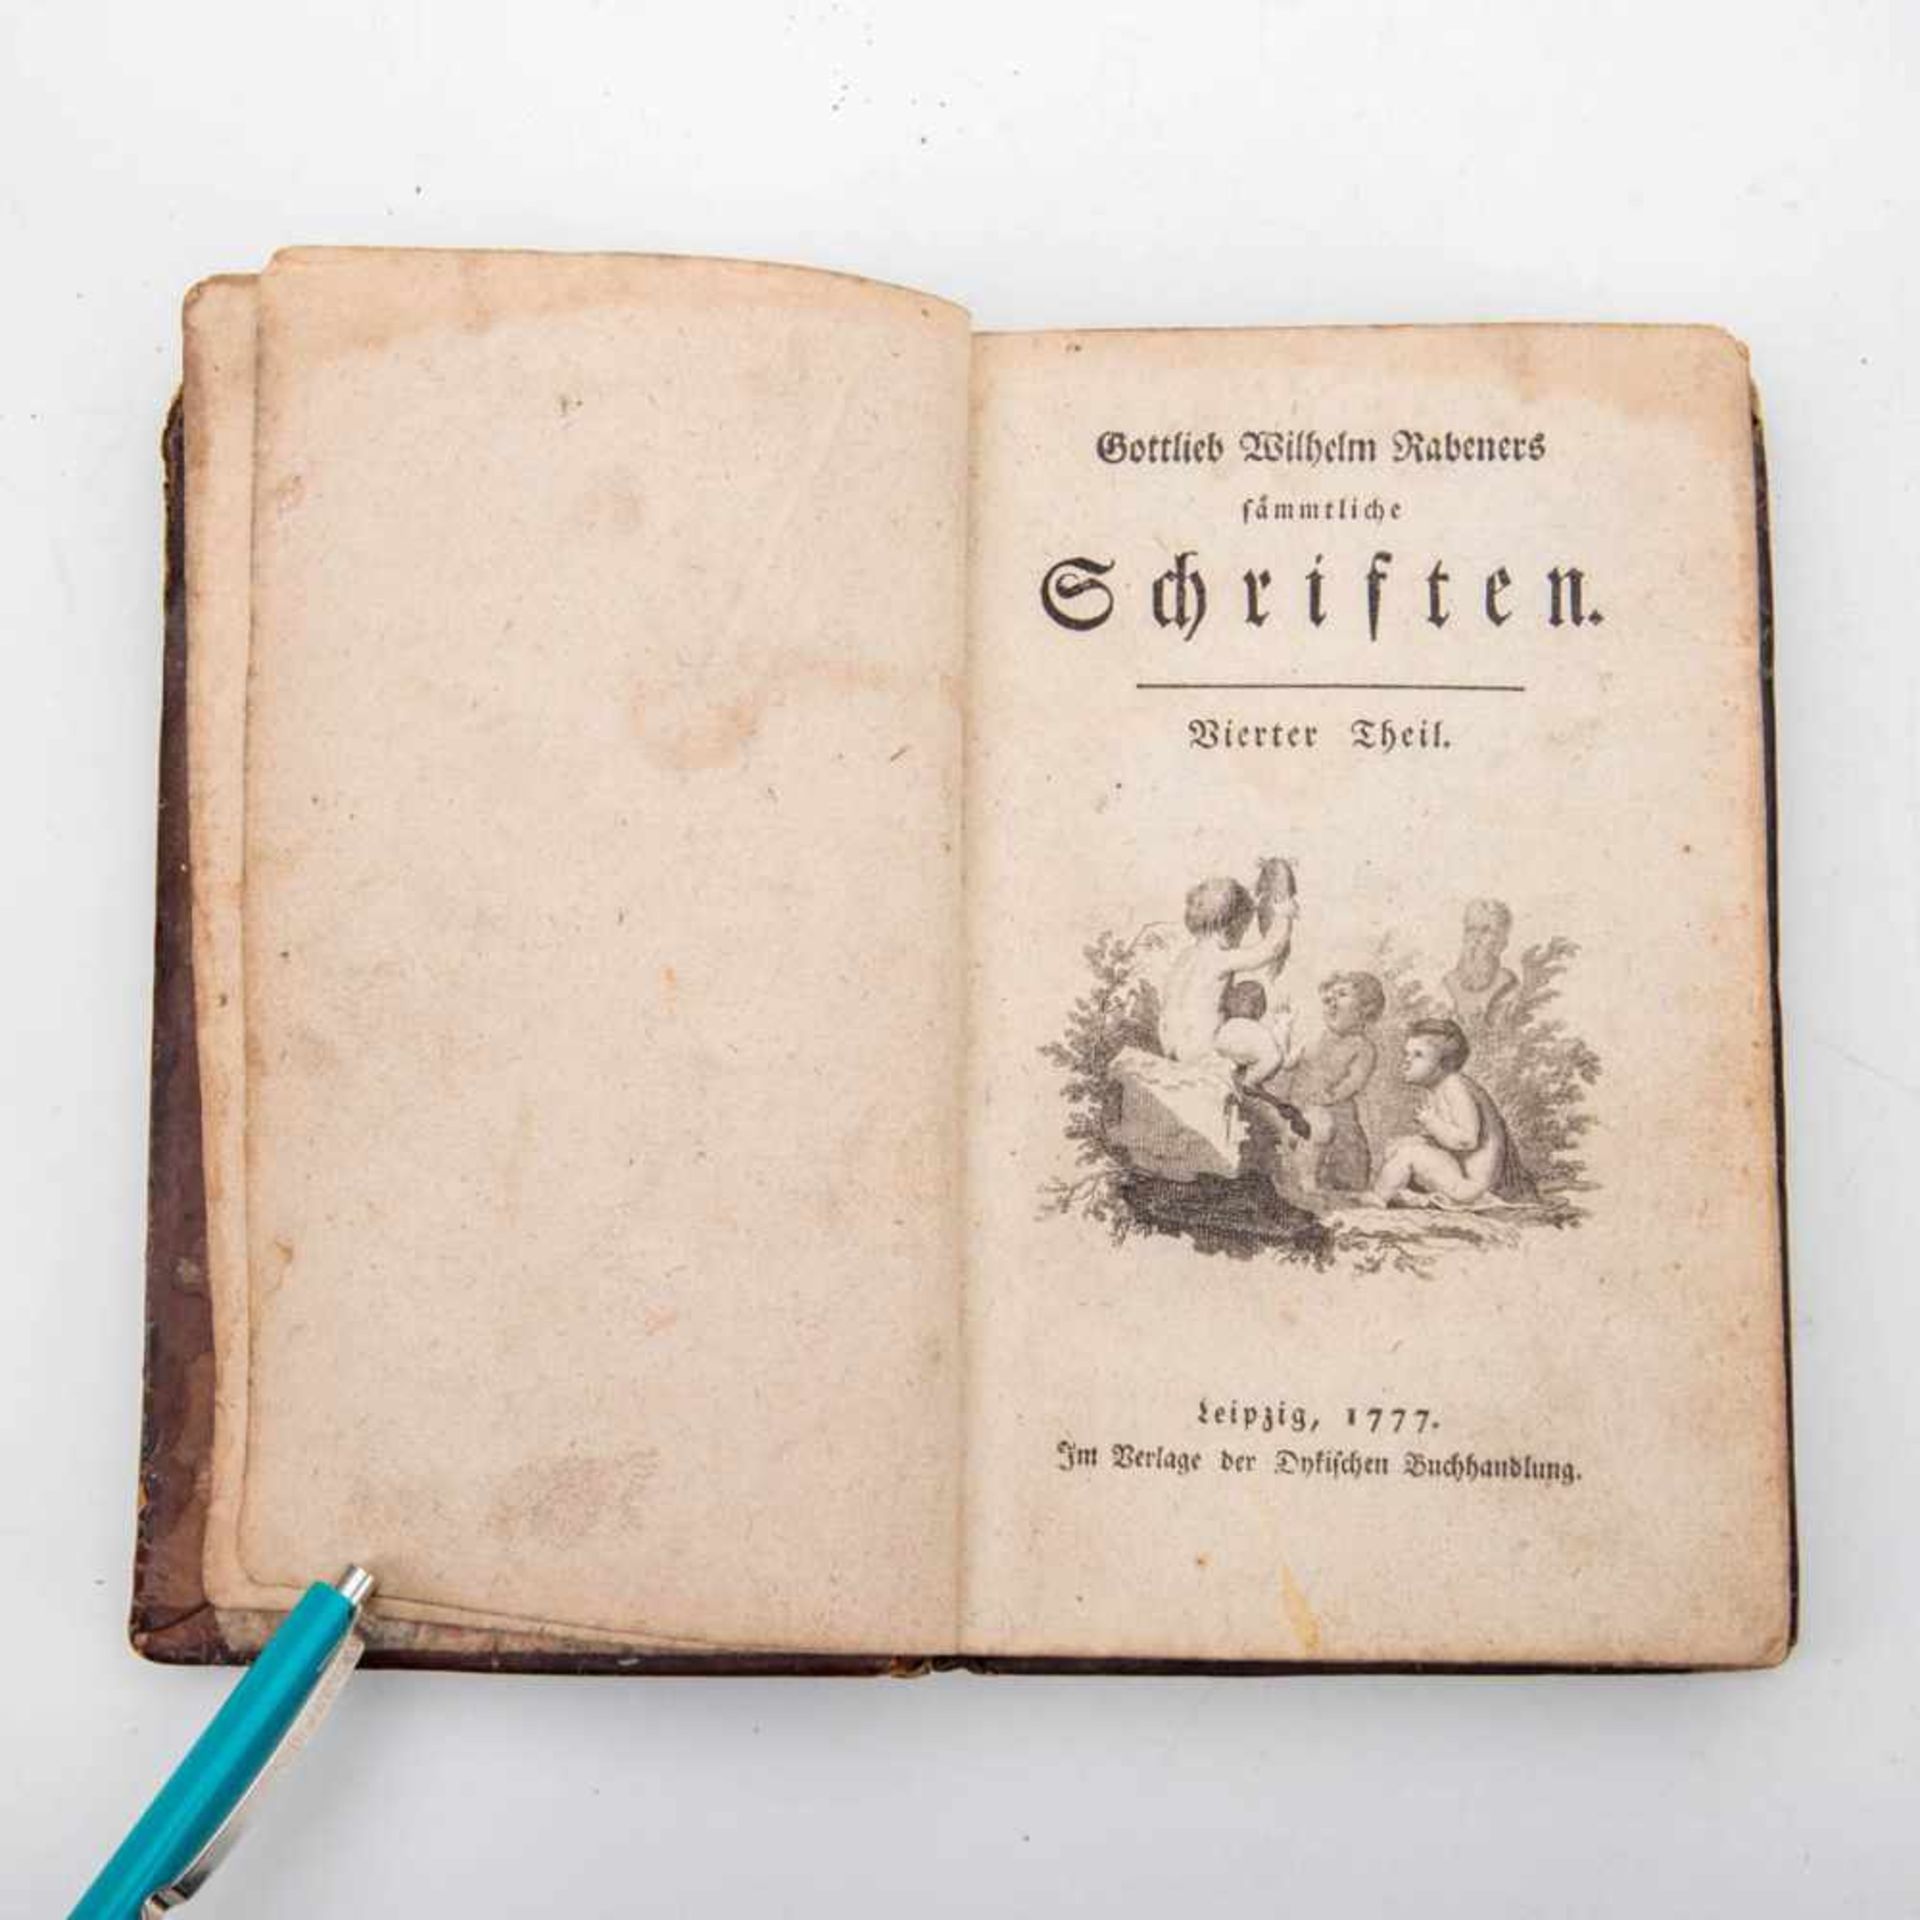 Gottlieb Wilhelm, Rabeners sämtliche SchriftenLeipzig 1777, Verlag der Dytischen Buchhandlung. - Image 2 of 2